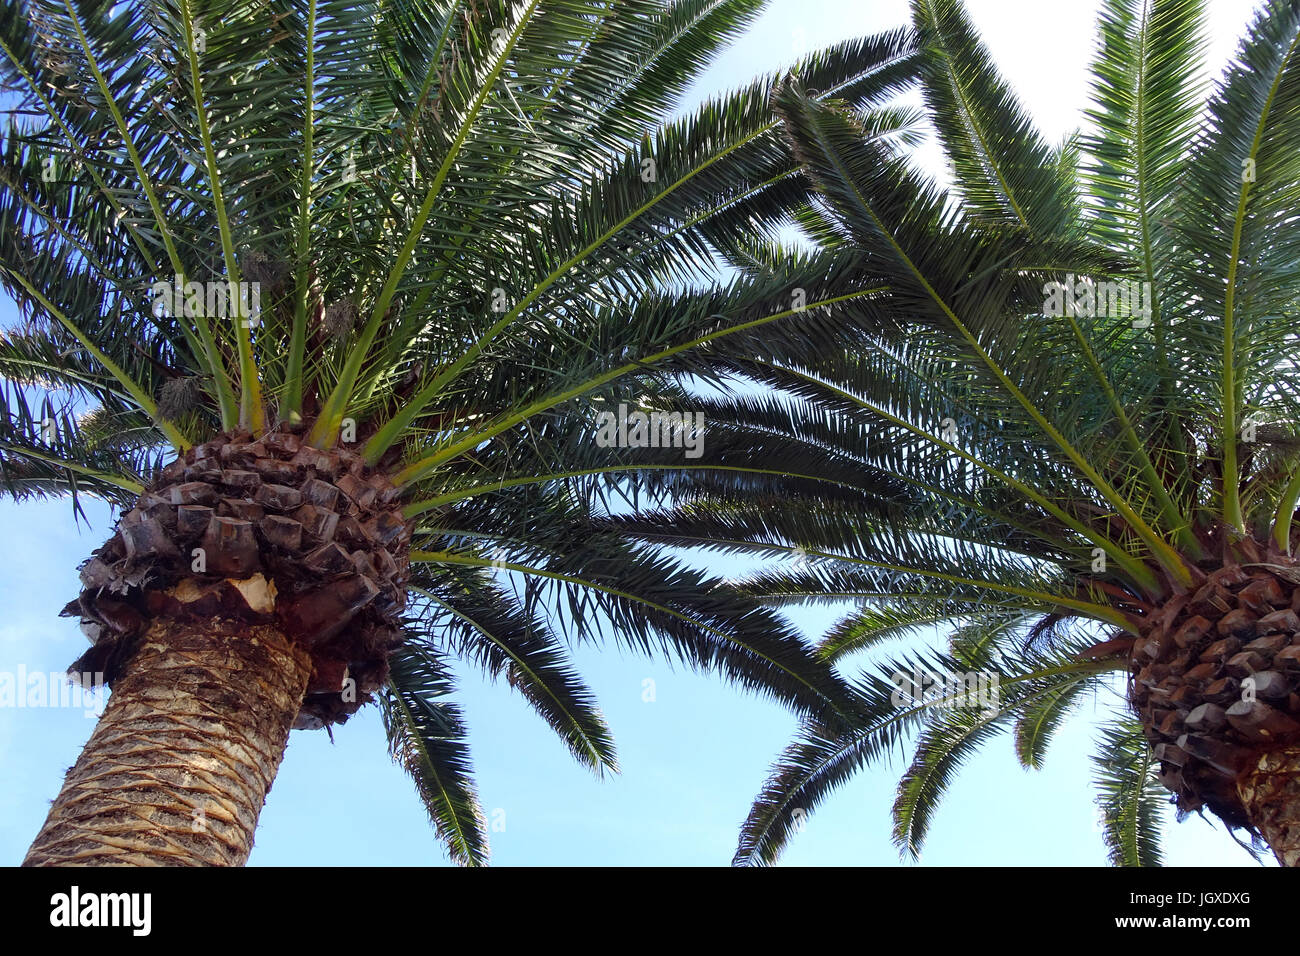 Palmen en tiagua, commune de Teguise, Lanzarote, kanarische inseln, europa | palmiers à tiagua, Teguise, Lanzarote, Canaries, l'Europe Banque D'Images